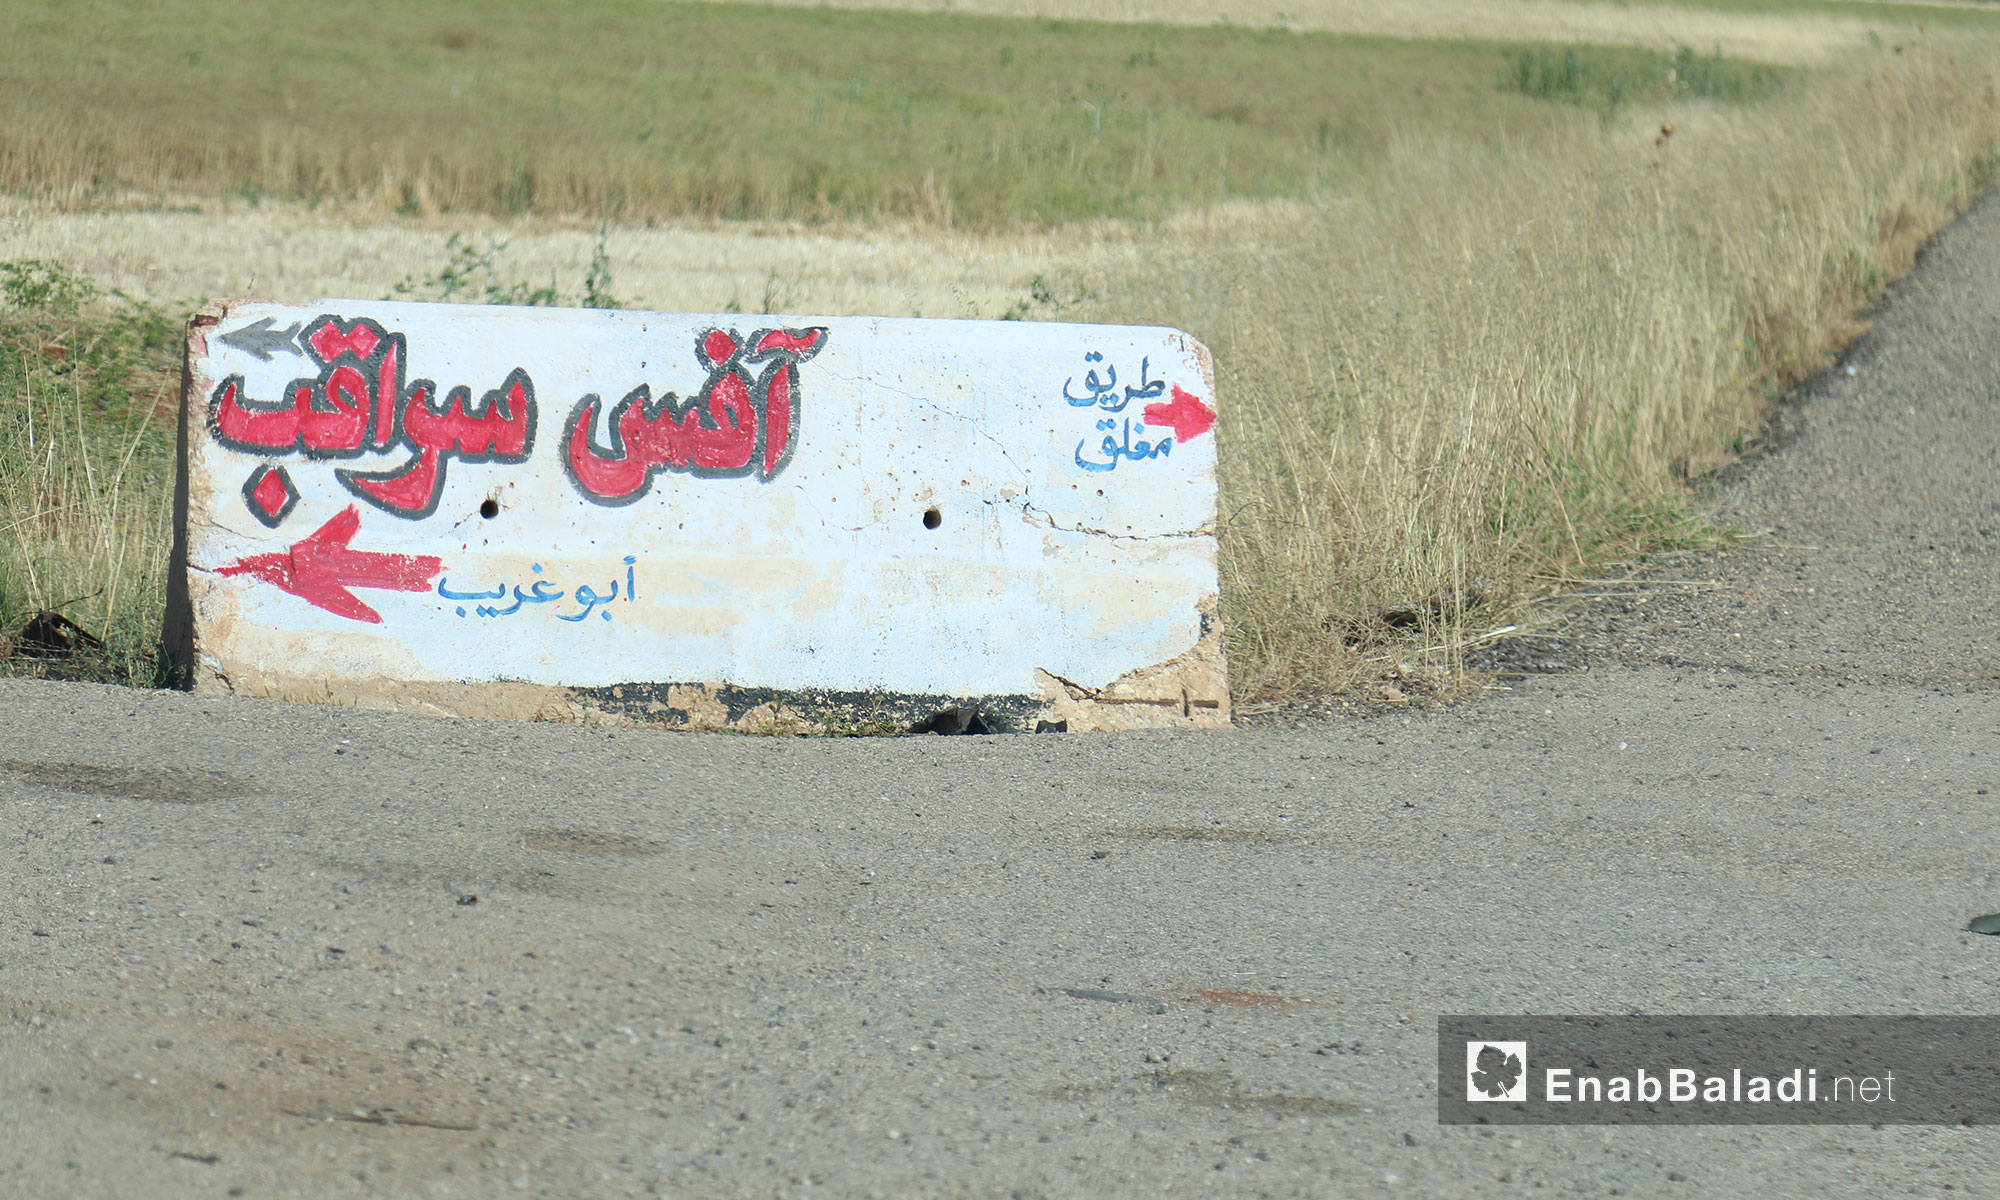 لافتة طرقية توضح الاتجاهات في مدينة سراقب بريف إدلب - 17 حزيران 2017 (عنب بلدي)